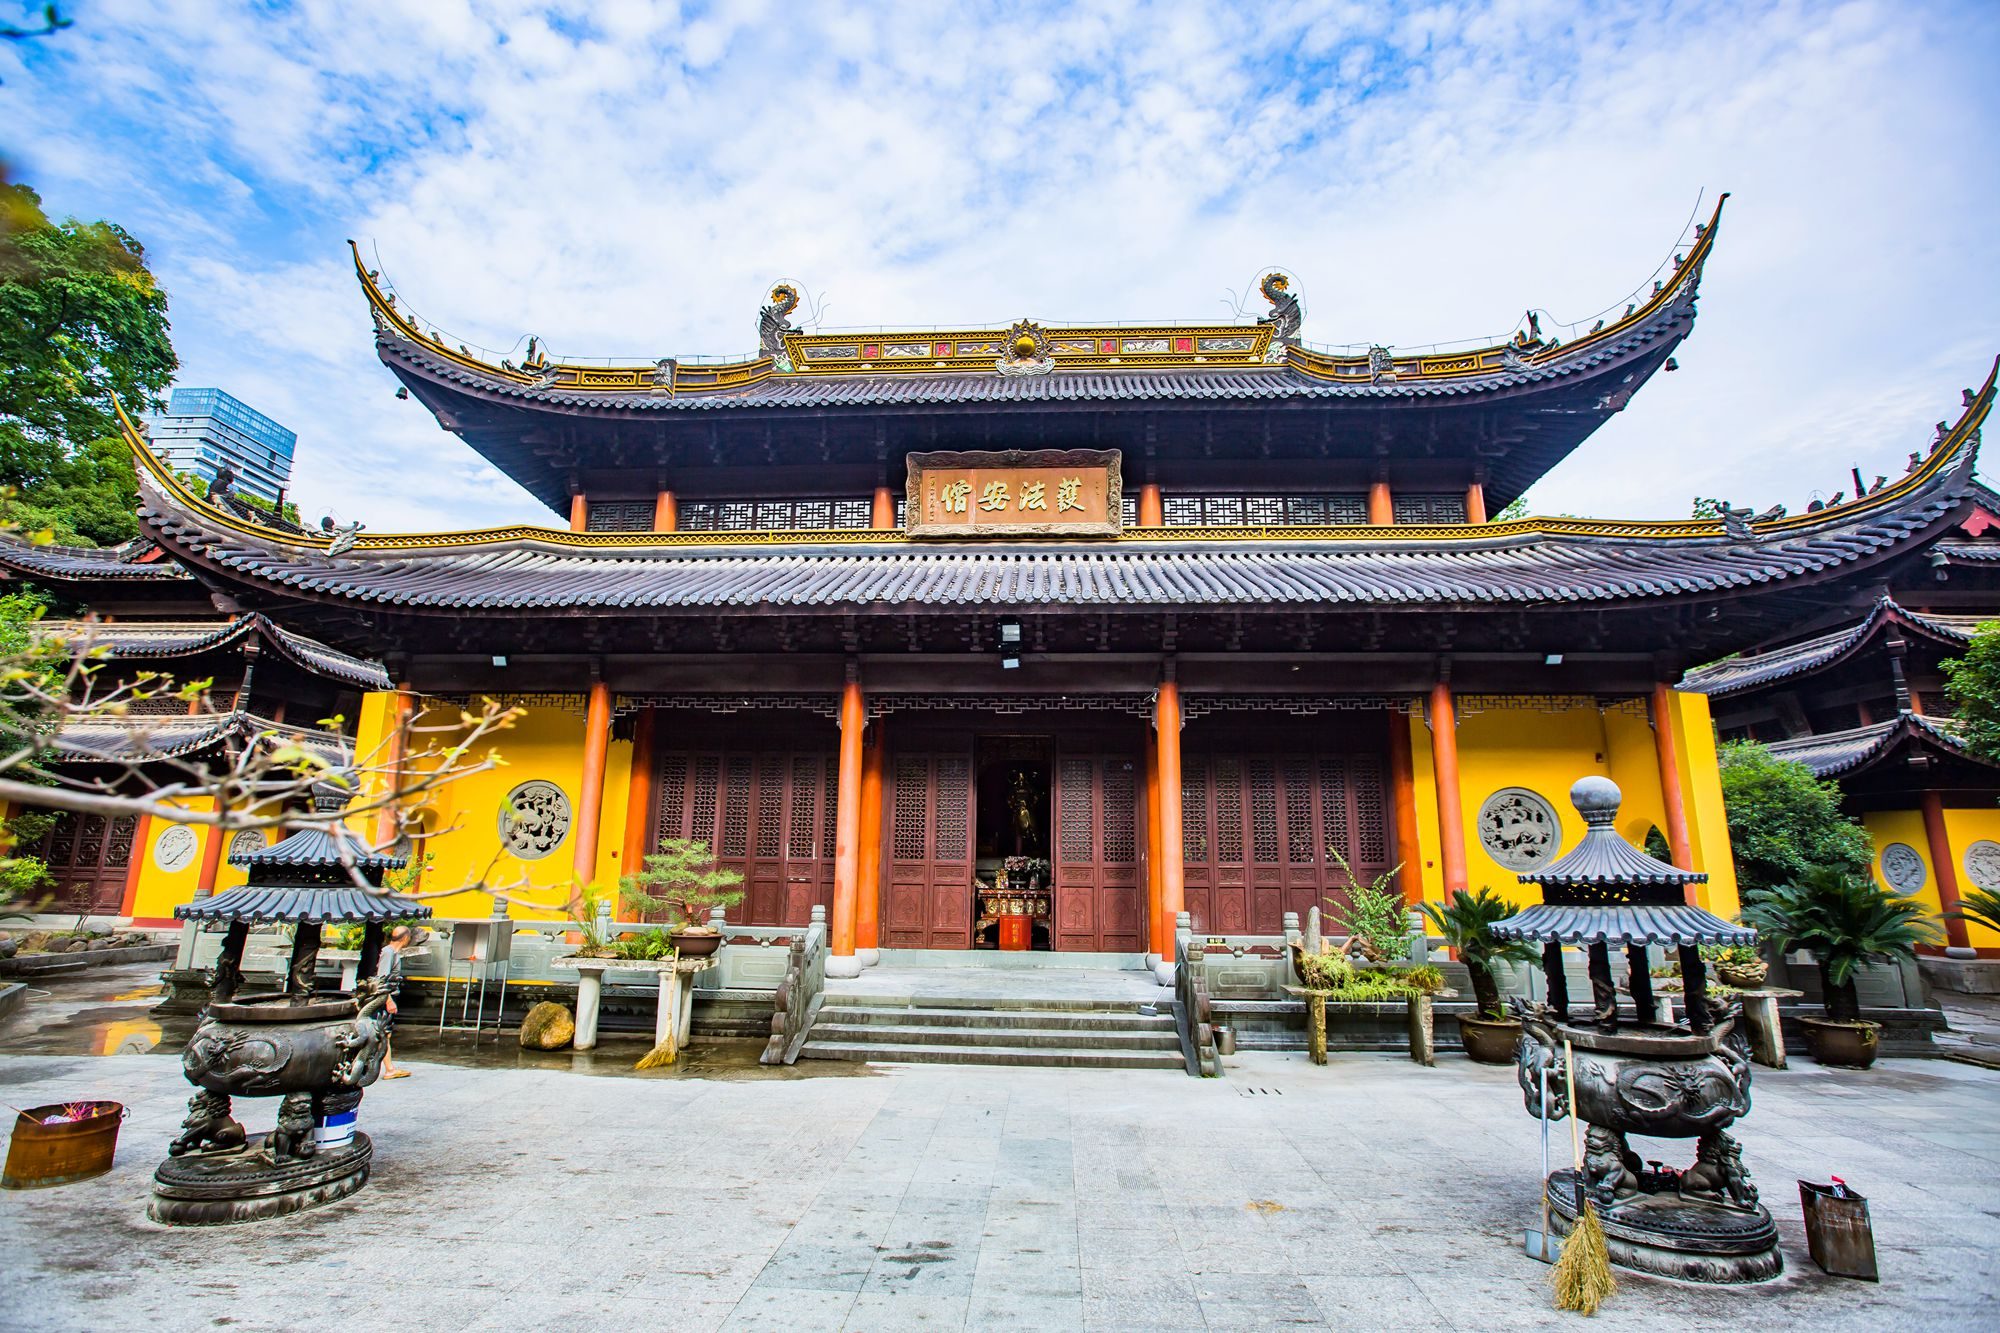 杭州桐庐圆通禅寺,环境优美,是我国建寺最早的观音道场之一